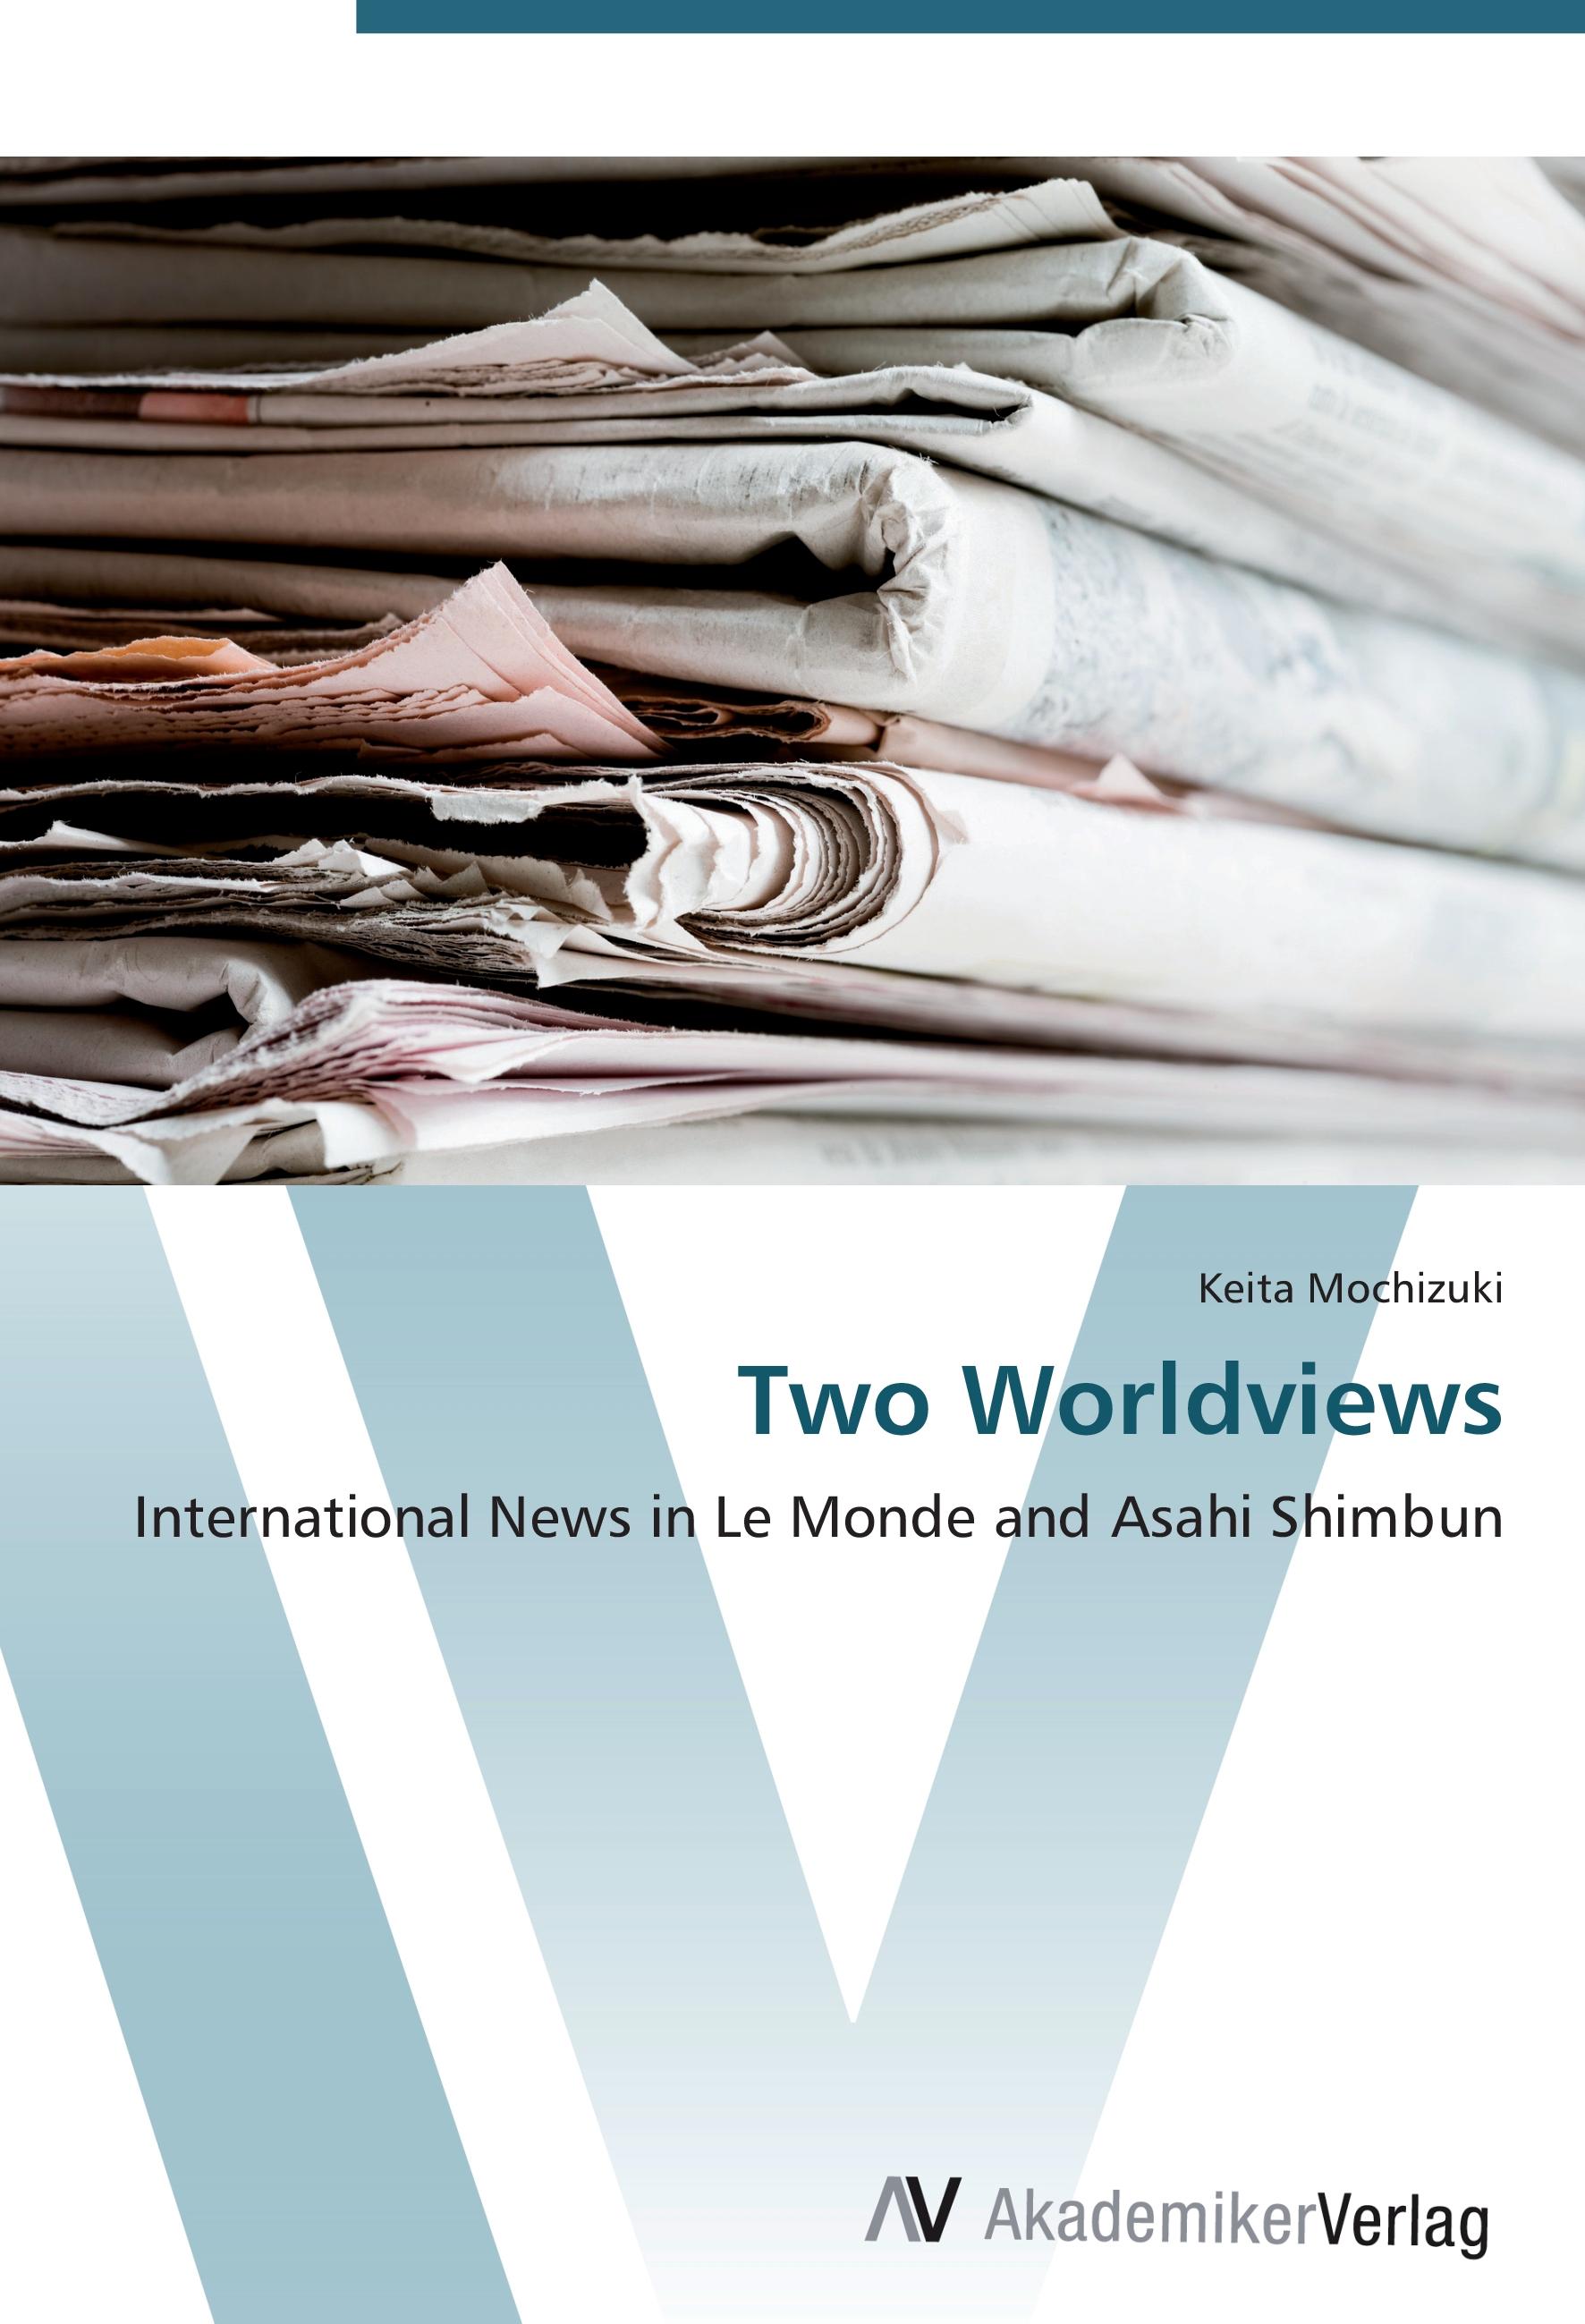 Two Worldviews - Keita Mochizuki